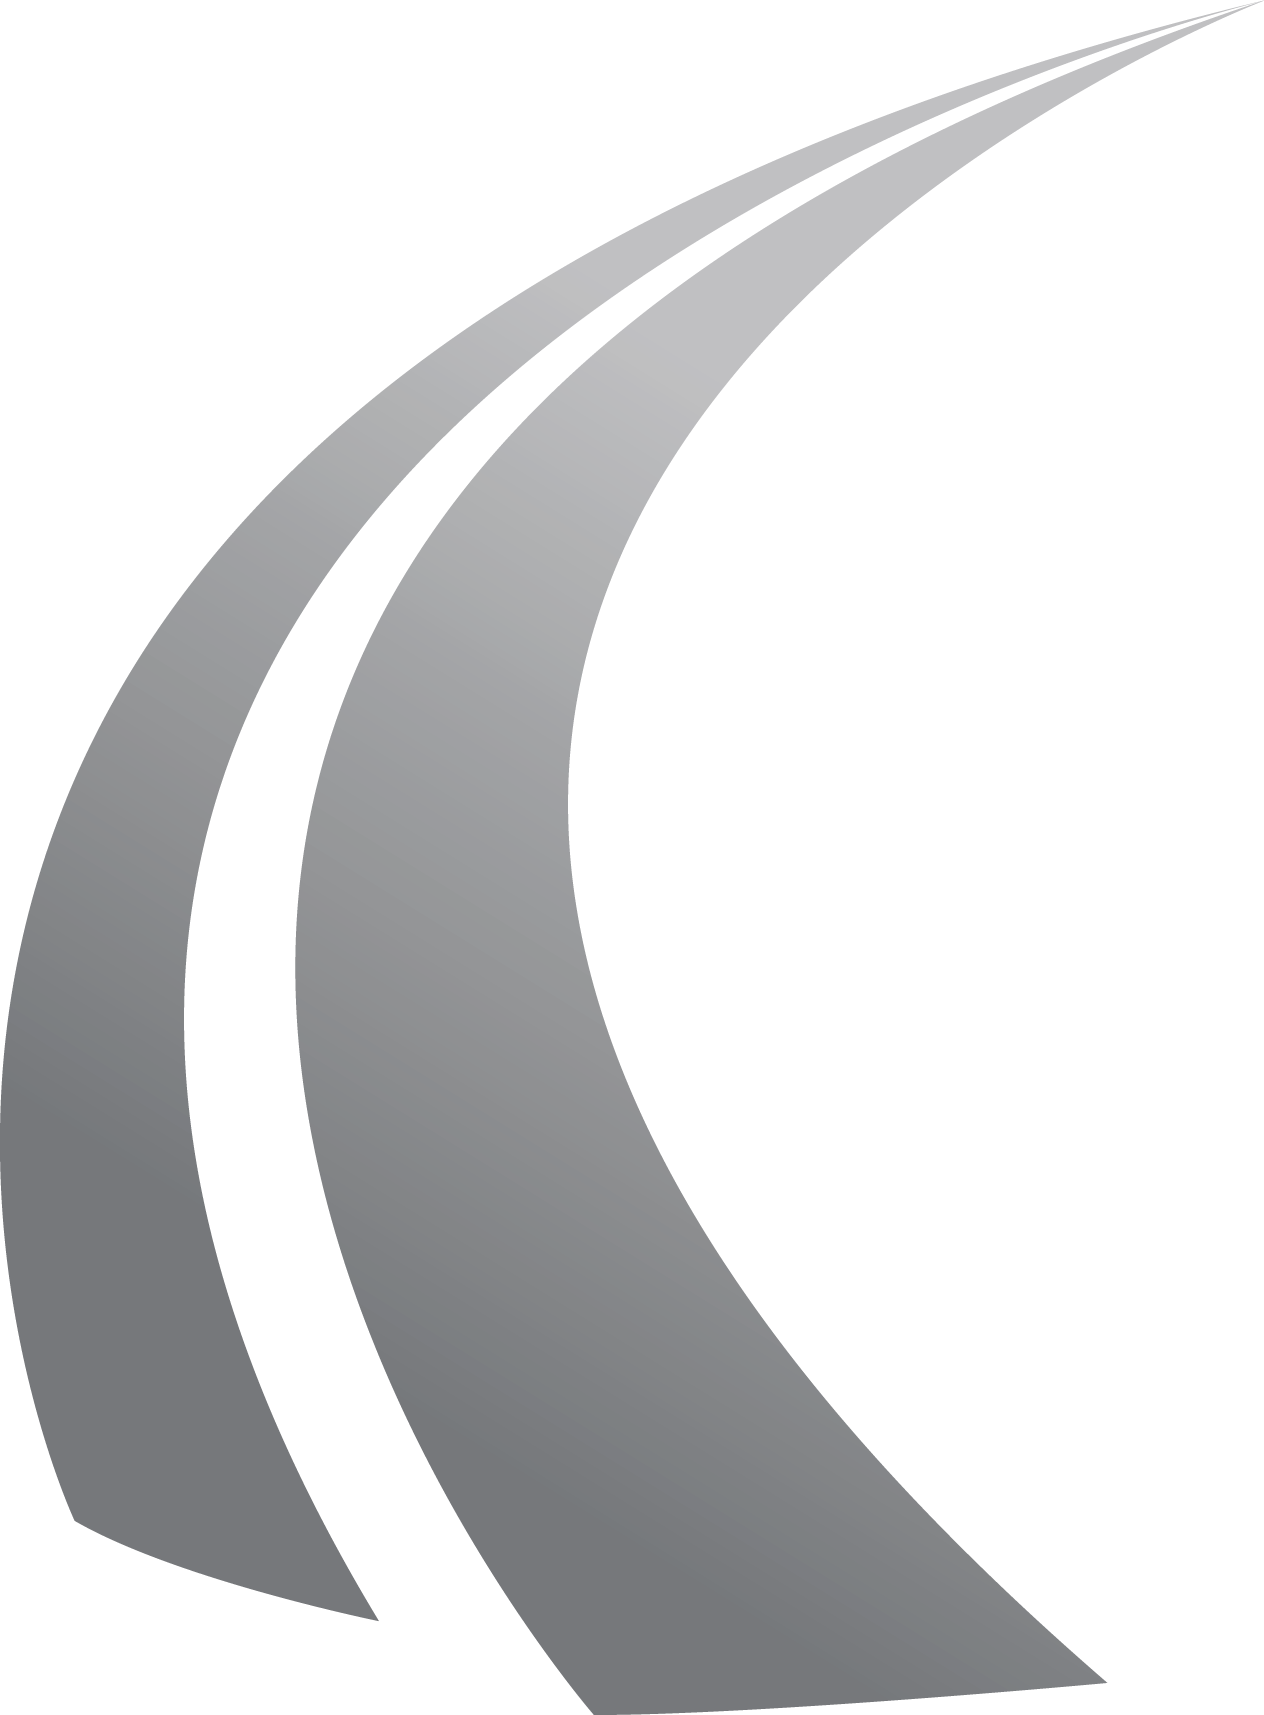 NLERSP-logo_road-only